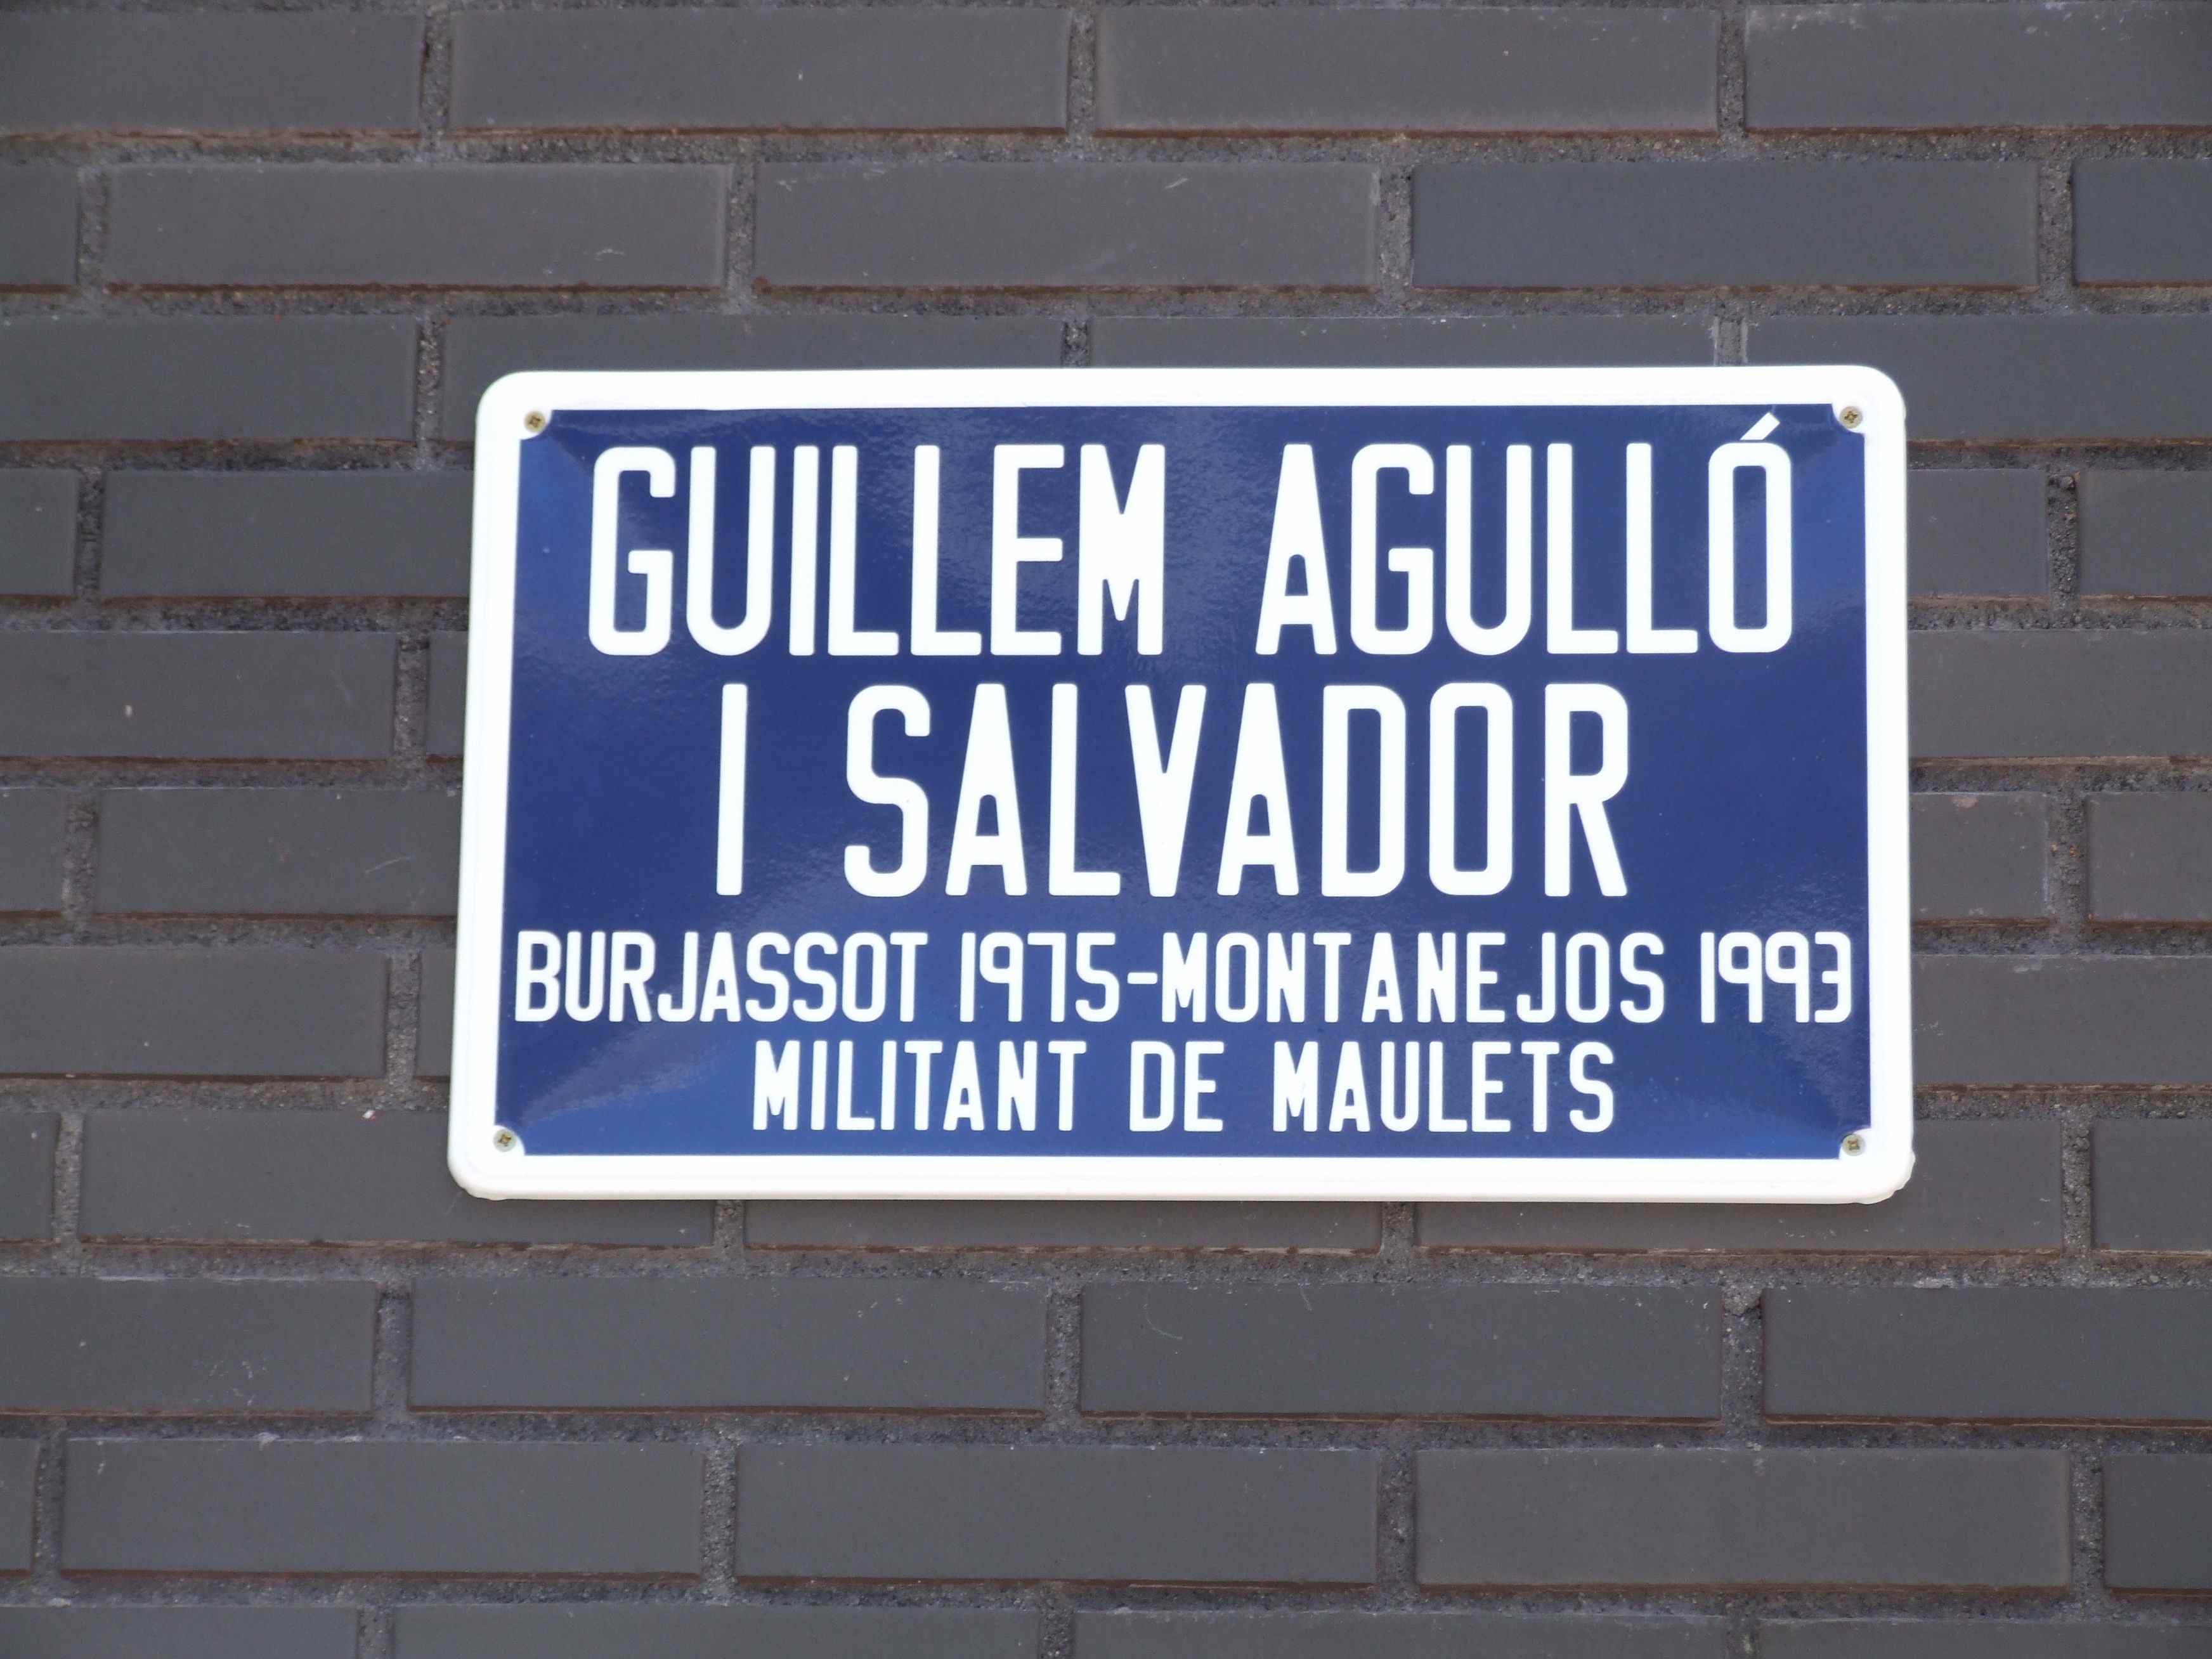 Barcelona dedicarà un carrer a Guillem Agulló (amb l’única oposició del PP)